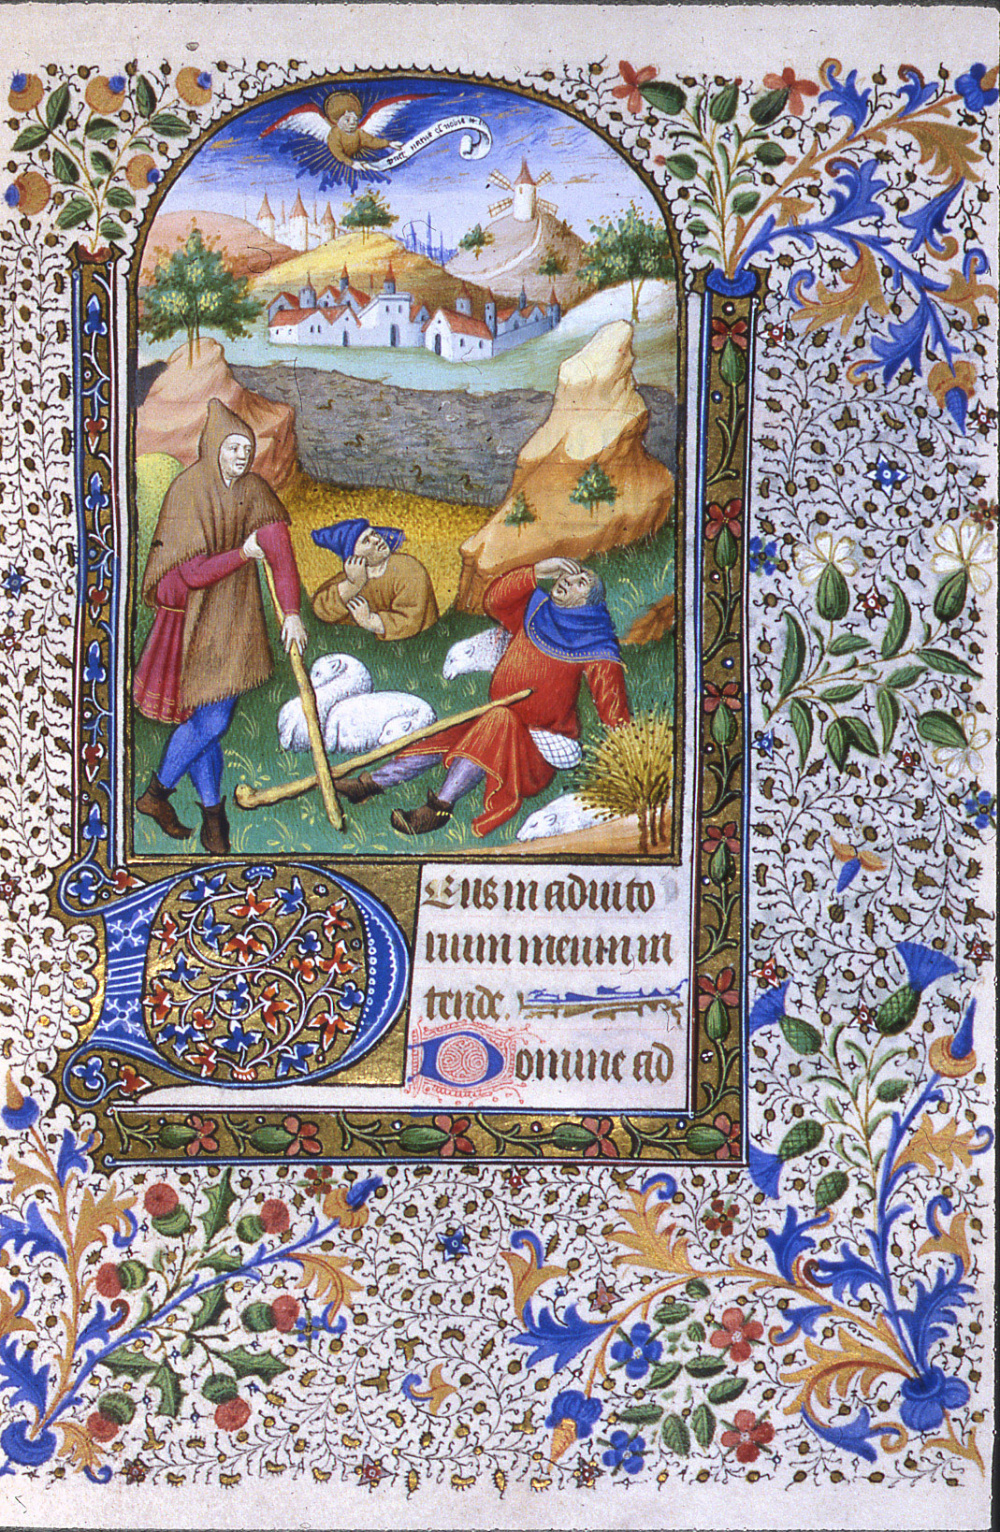 Heures latines à l'usage de Paris (15e siècle) : Annonce aux bergers. © Bibliothèque municipale de Grenoble.